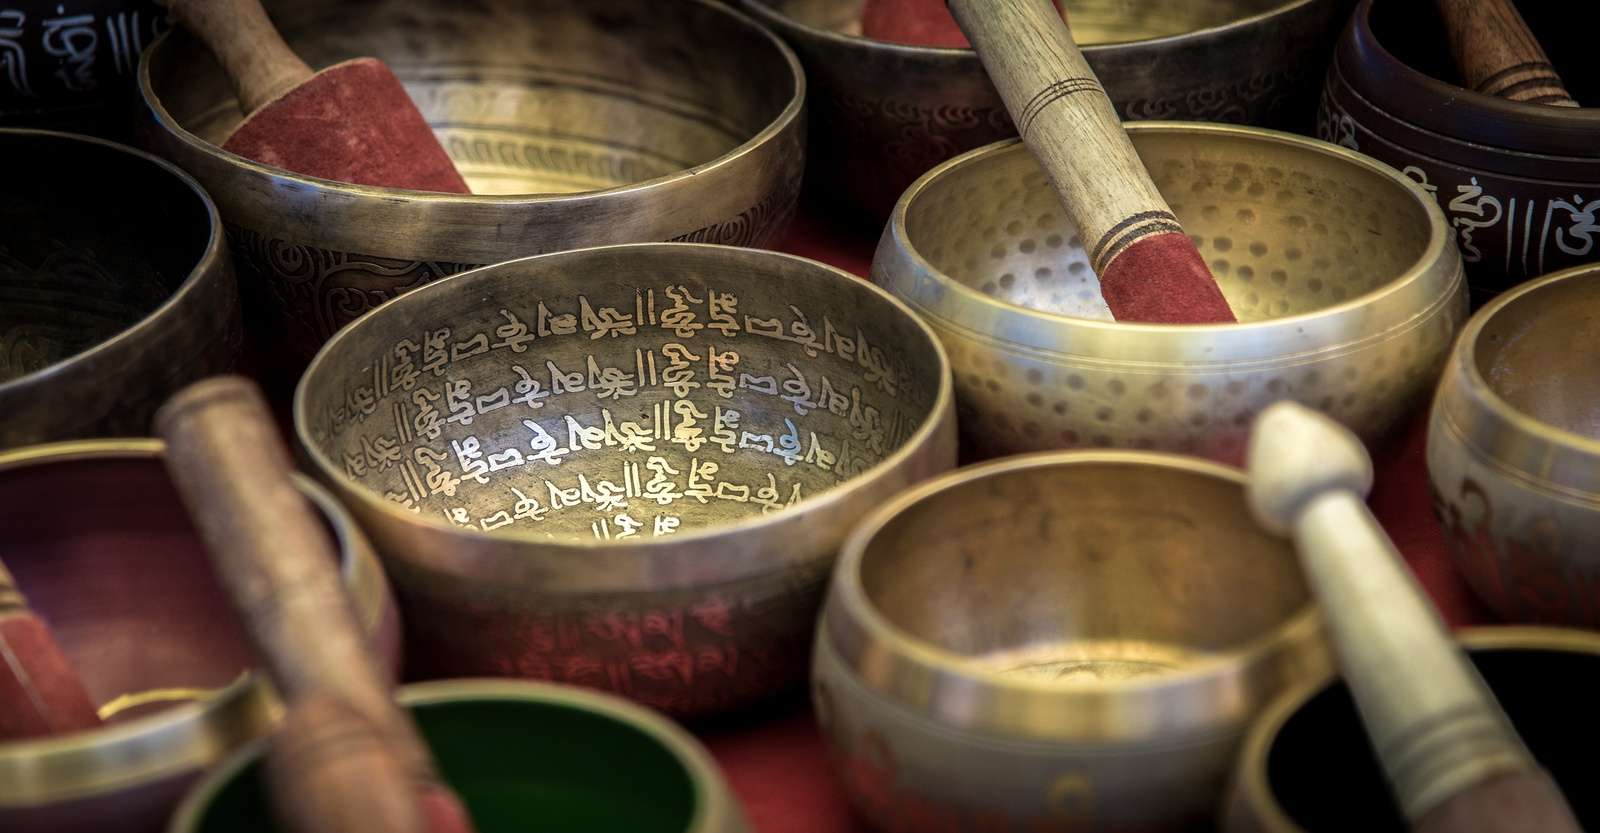 Prayer bowls, Alchi Monastery, Leh, India.